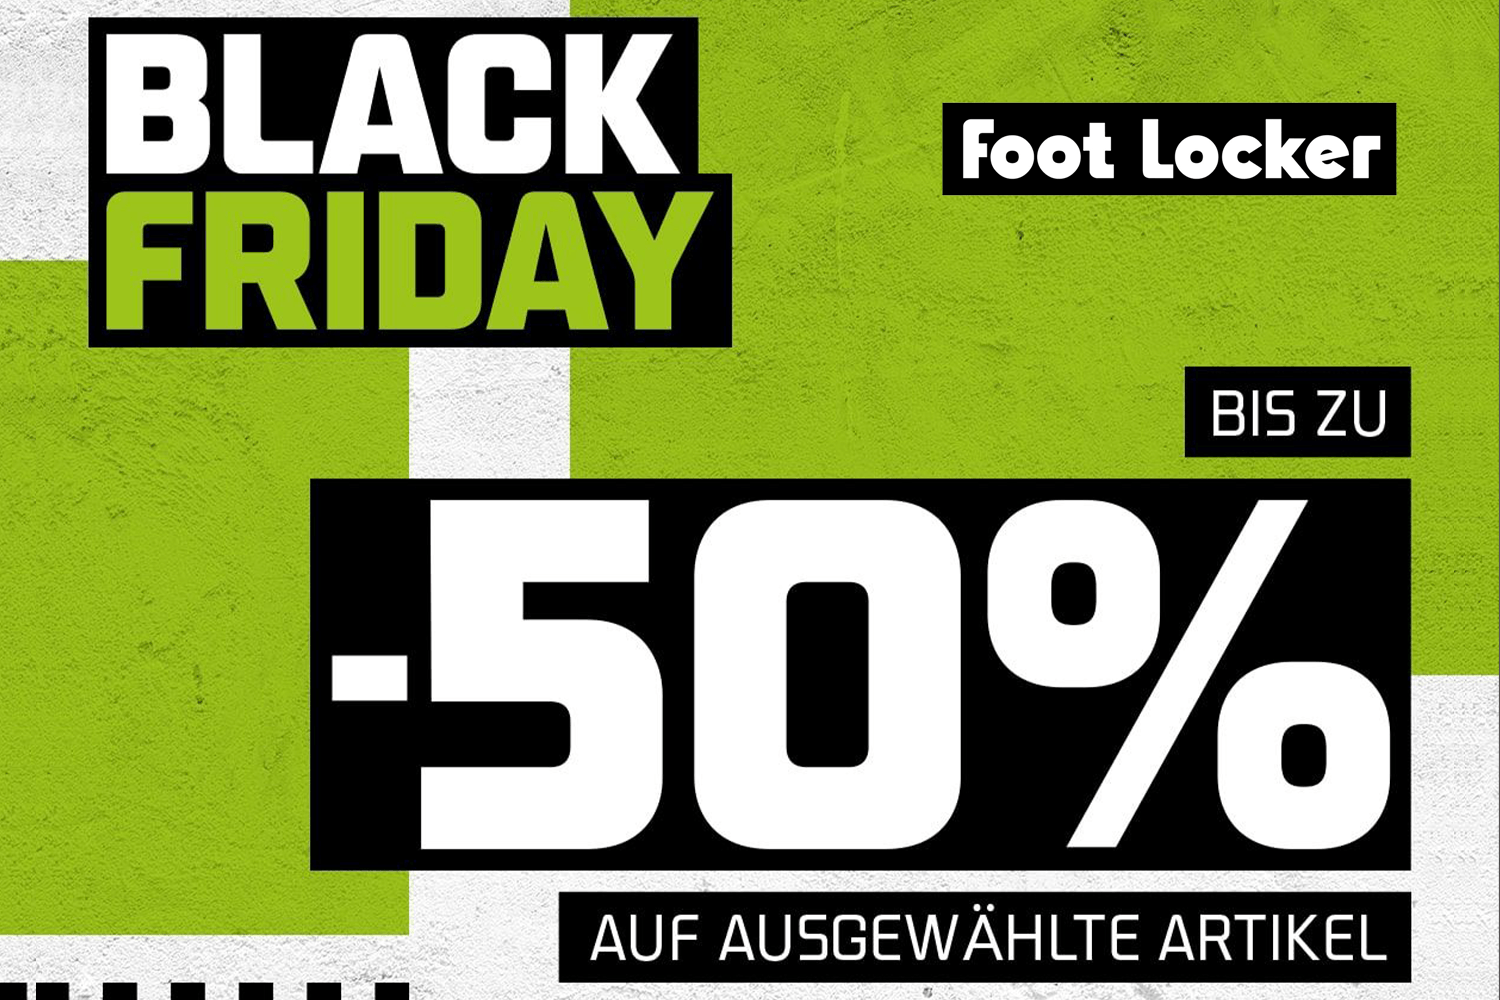 Seid ihr bereit für den early Foot Locker Black Friday Sale?